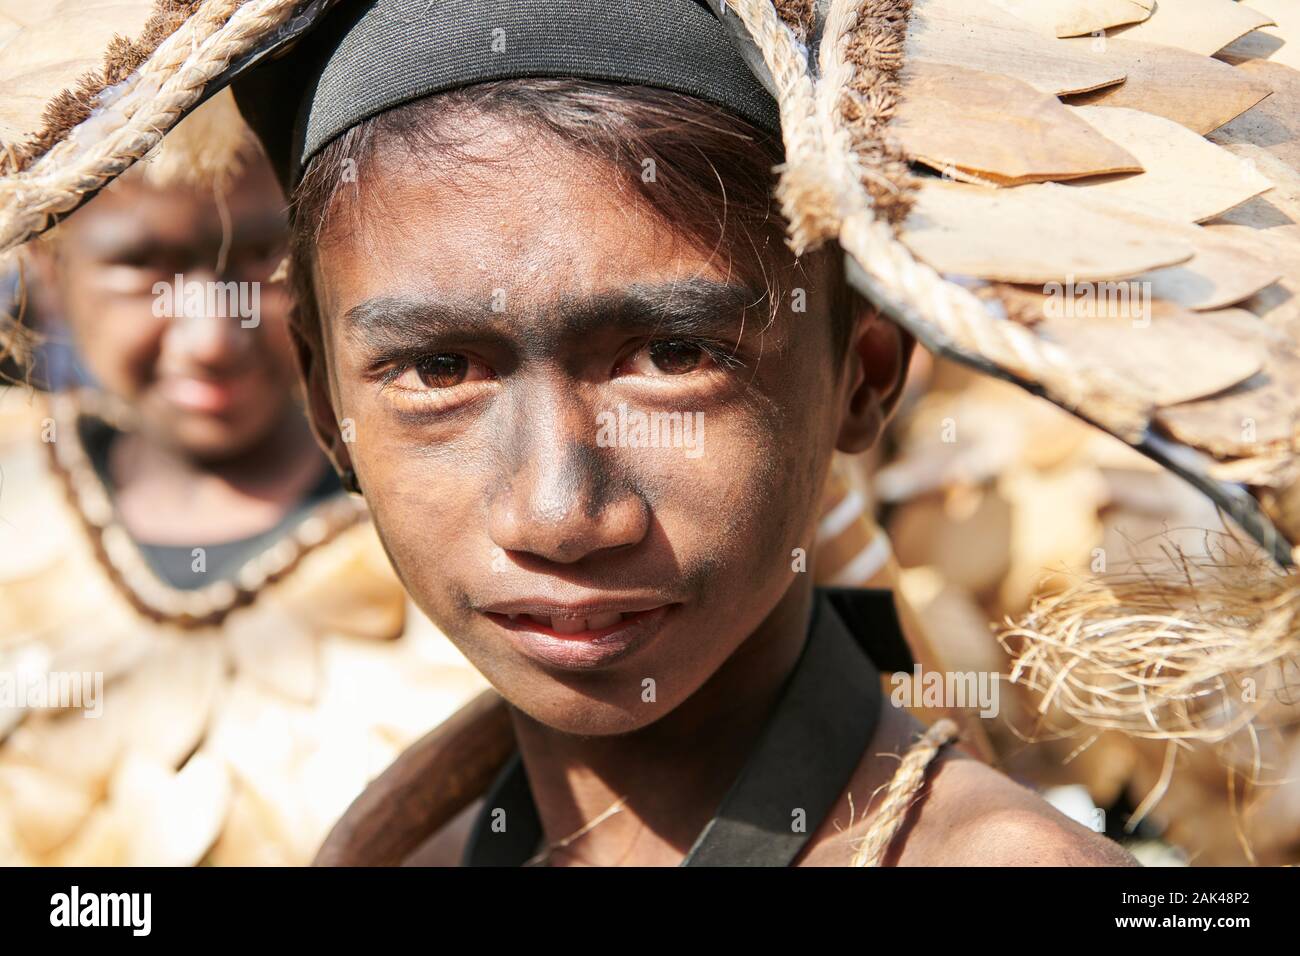 Ibajay Città, Provincia di Aklan, Filippine - 27 Gennaio 2019: Ritratto di ragazzo adolescente in costume nativo unendo la sfilata presso il Festival Ati-Atihan Foto Stock